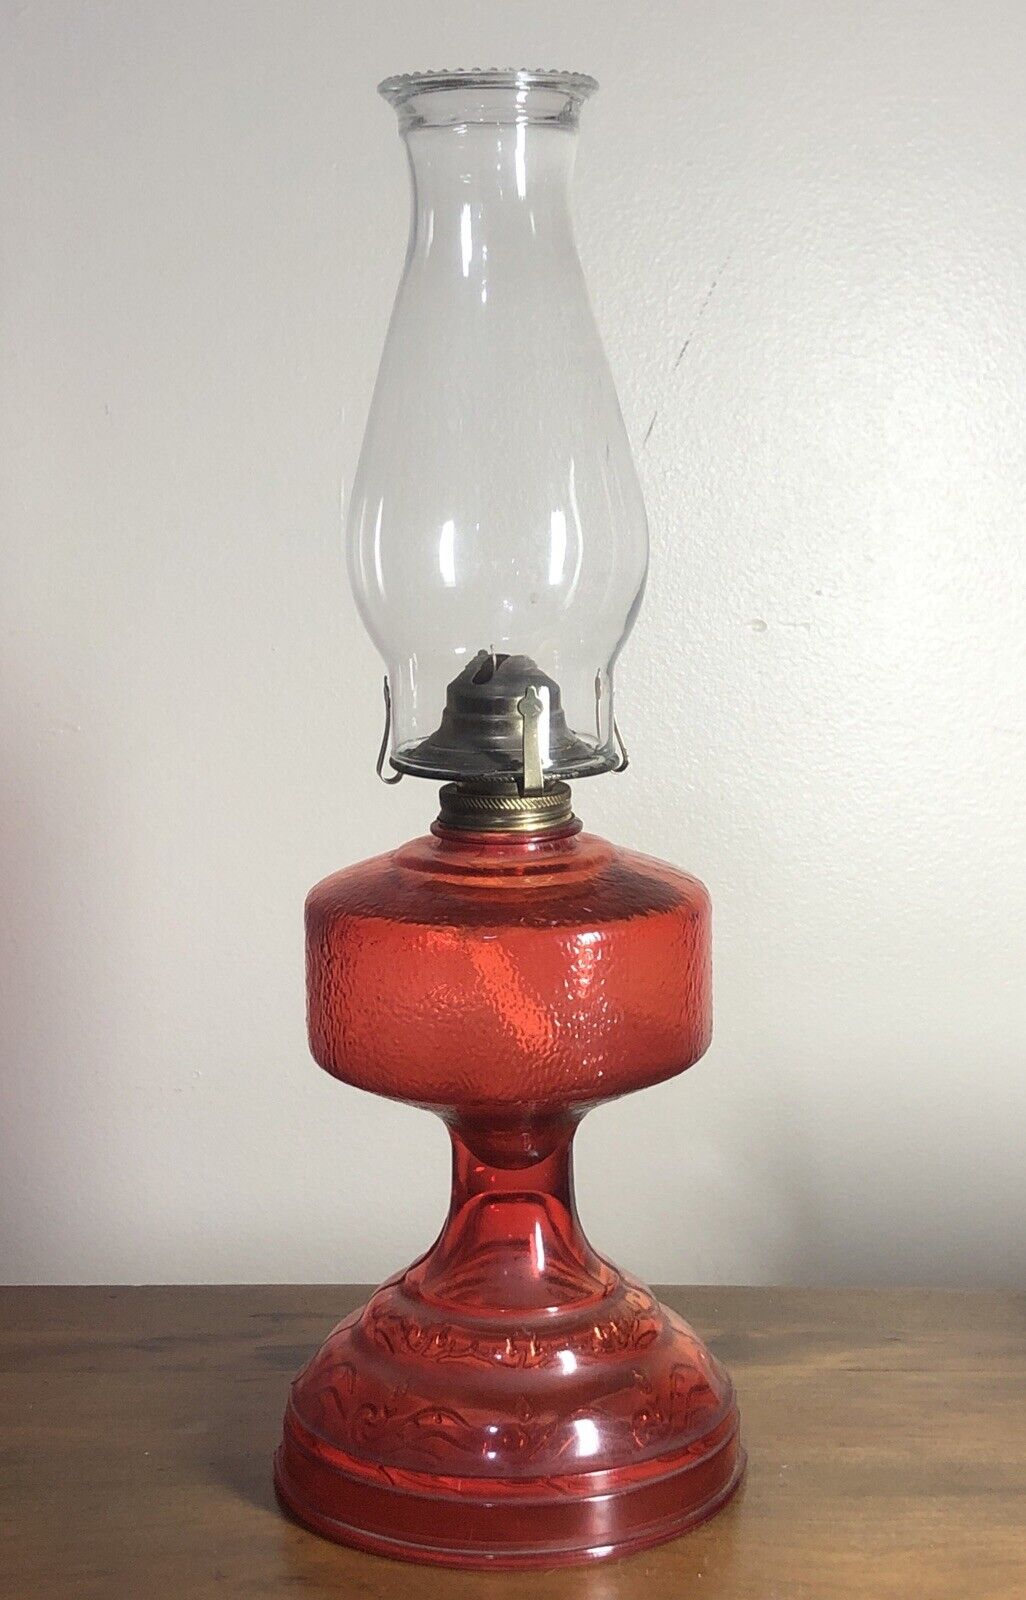 RARE Vintage Early American Lamp “Homesteader” Ruby Red Glass Kerosene 